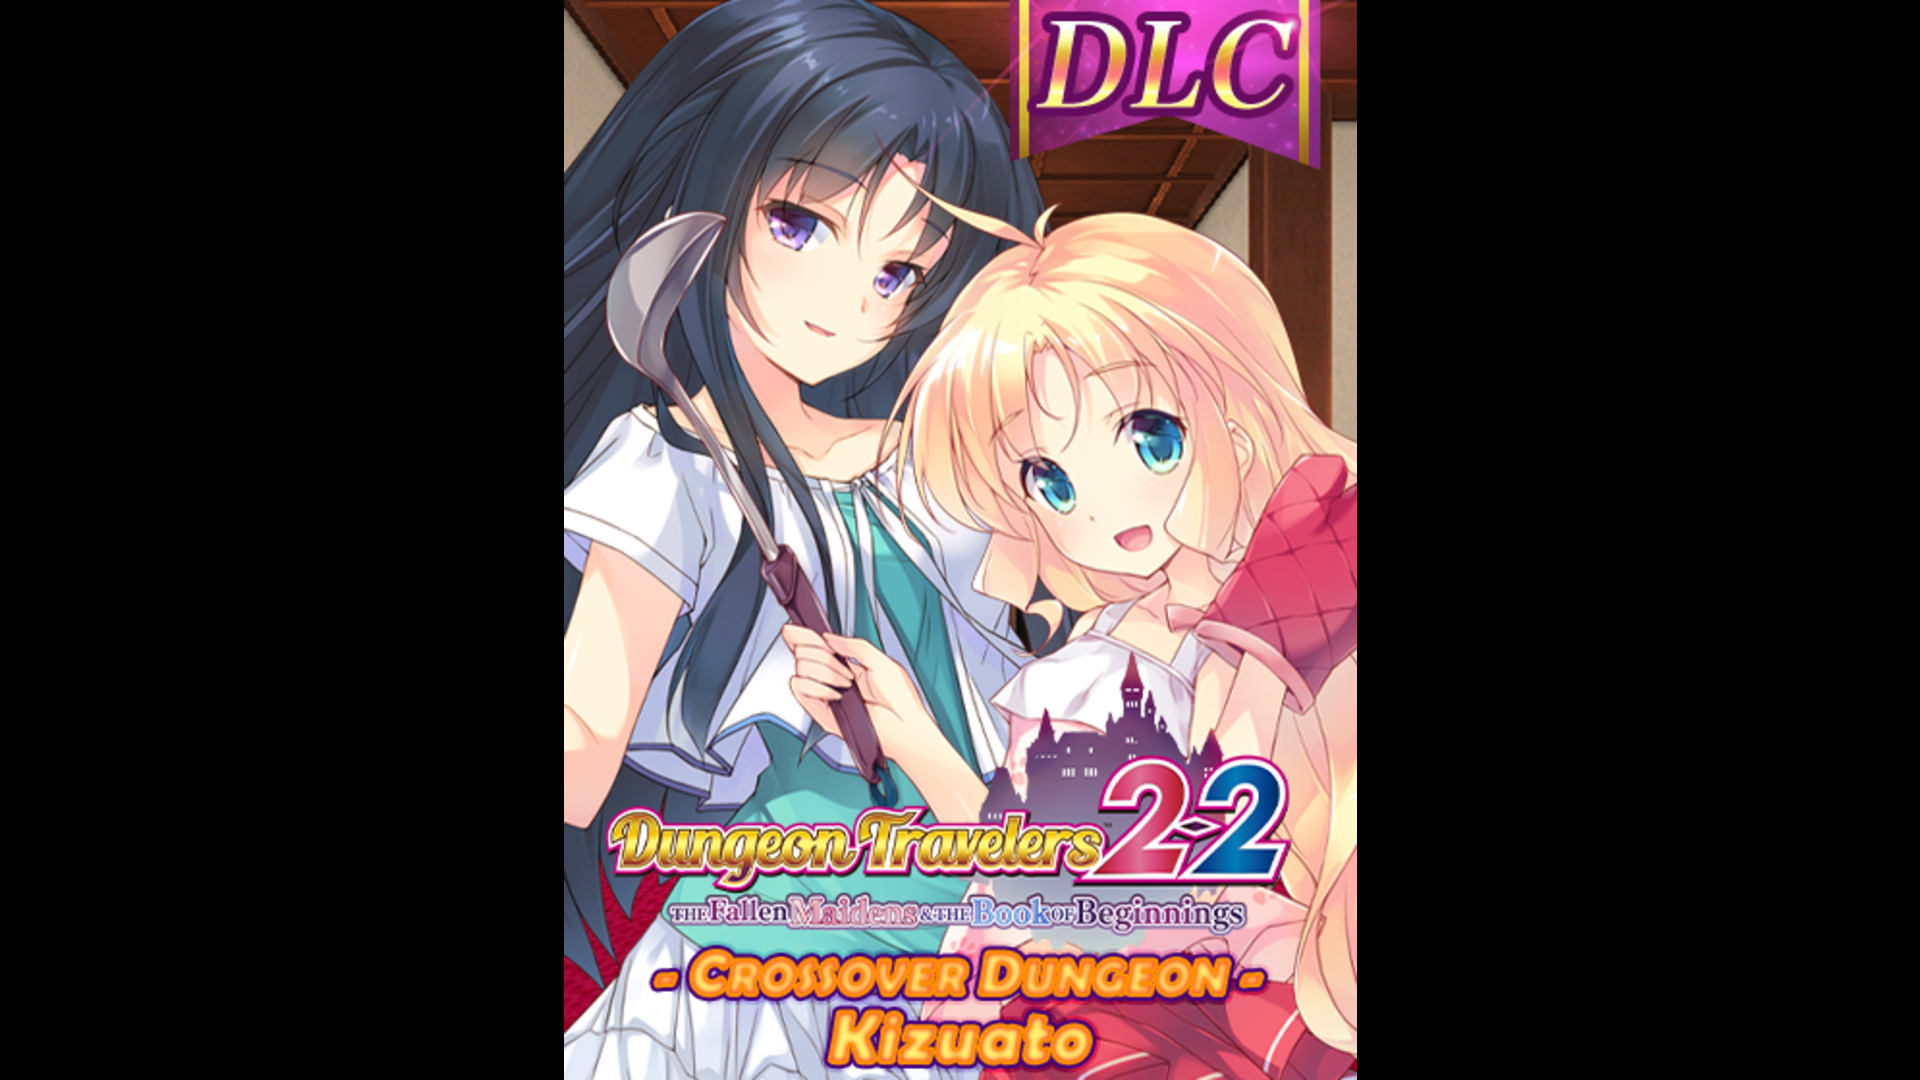 DLC - Dungeon: Tsurugiya ft. Kizuato (Dungeon Travelers 2-2) - RPG - 1